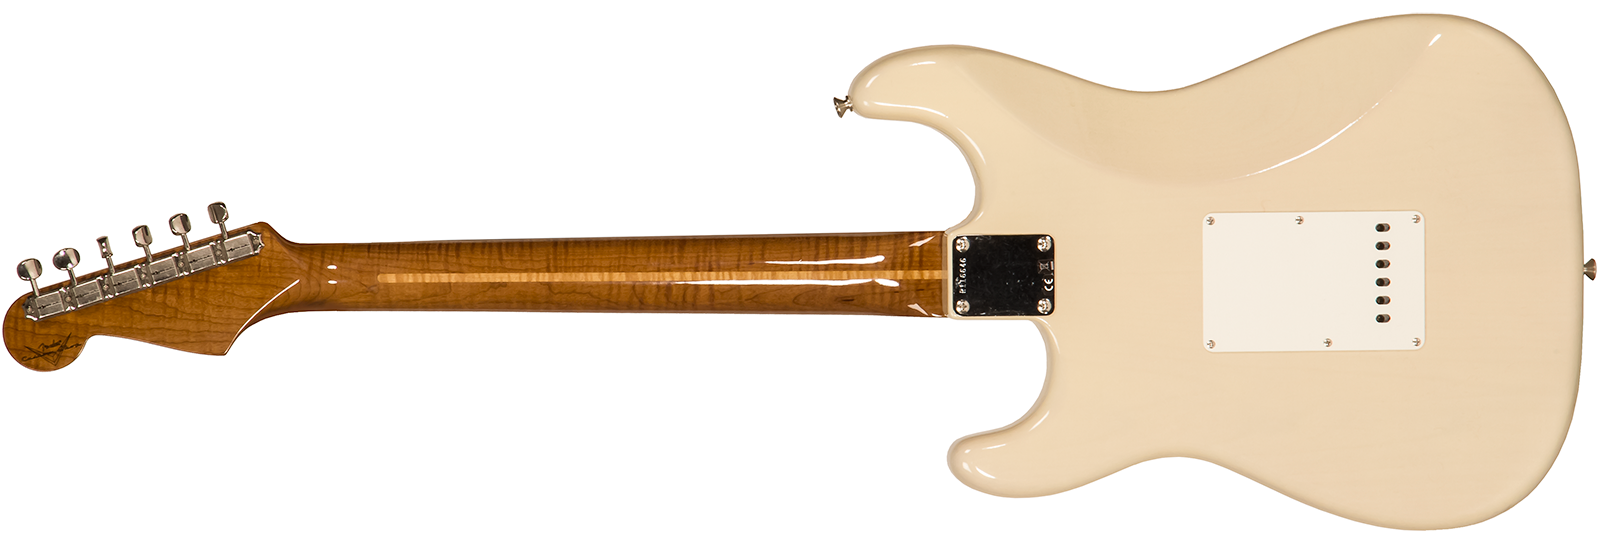 Fender Custom Shop Strat 1957 3s Trem Mn #r116646 - Lush Closet Classic Vintage Blonde - Guitare Électrique Forme Str - Variation 1